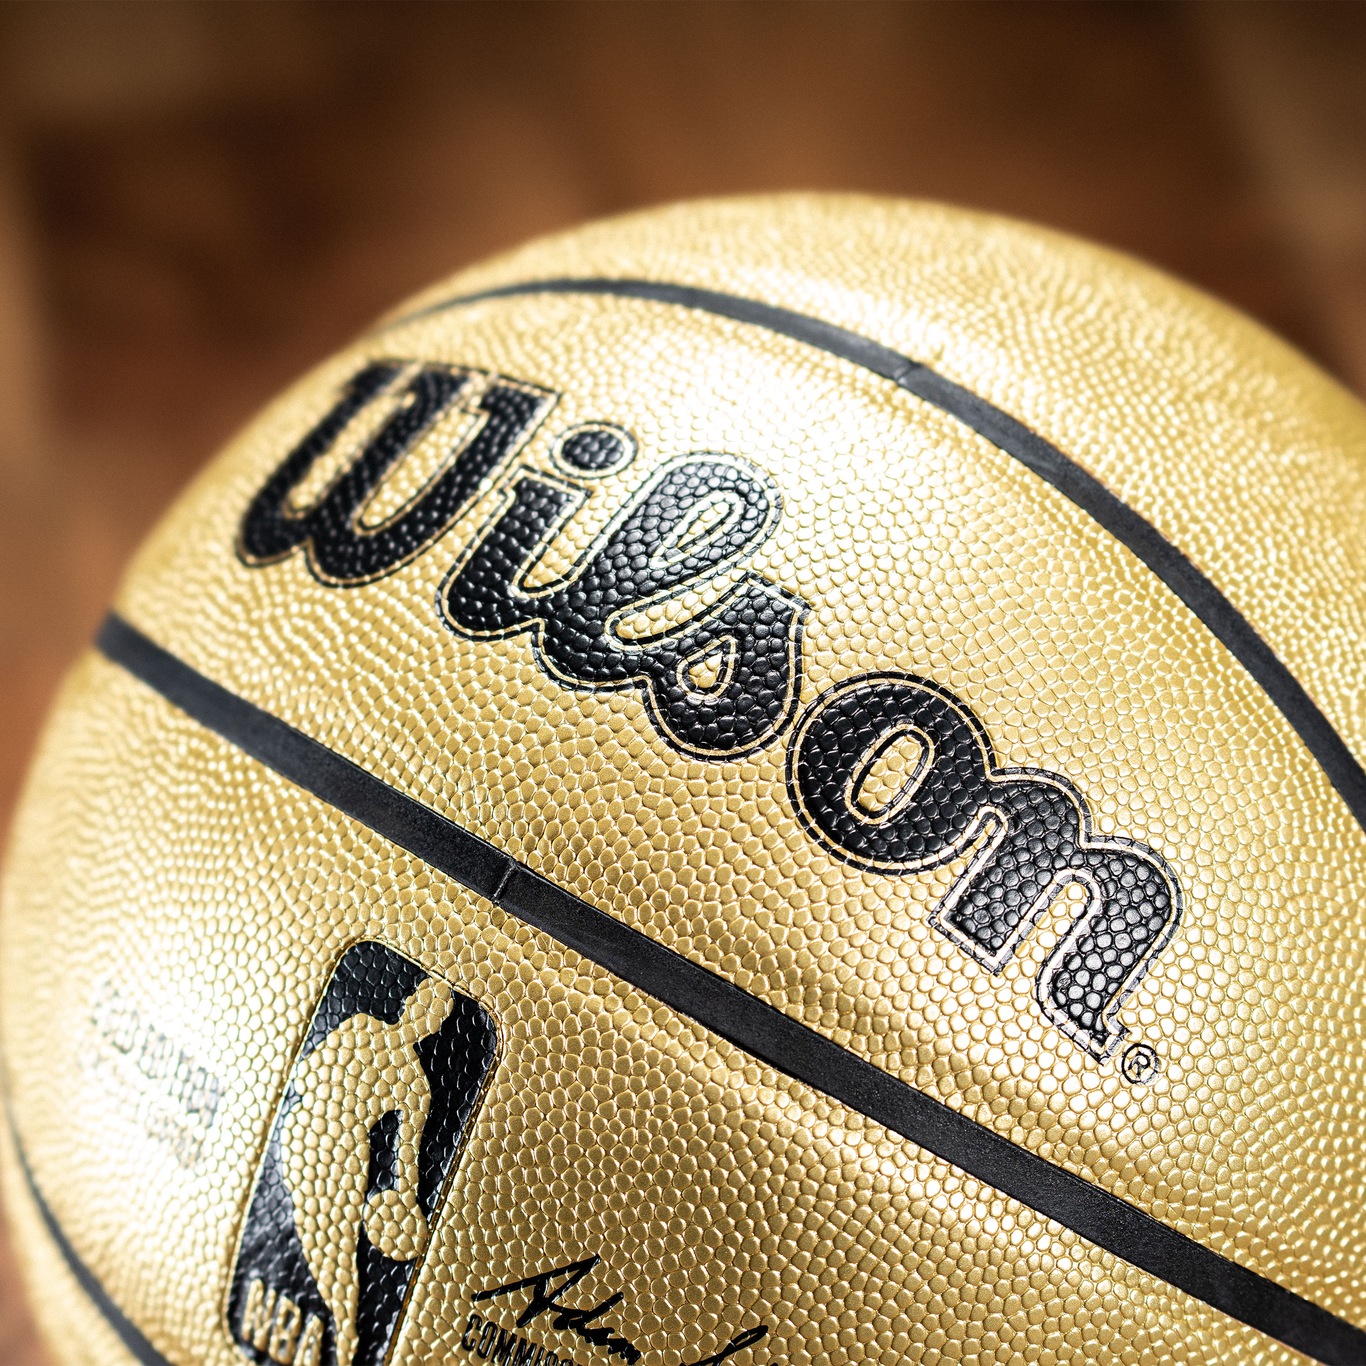 Bola de Basquete Wilson NBA Gold Edition #7